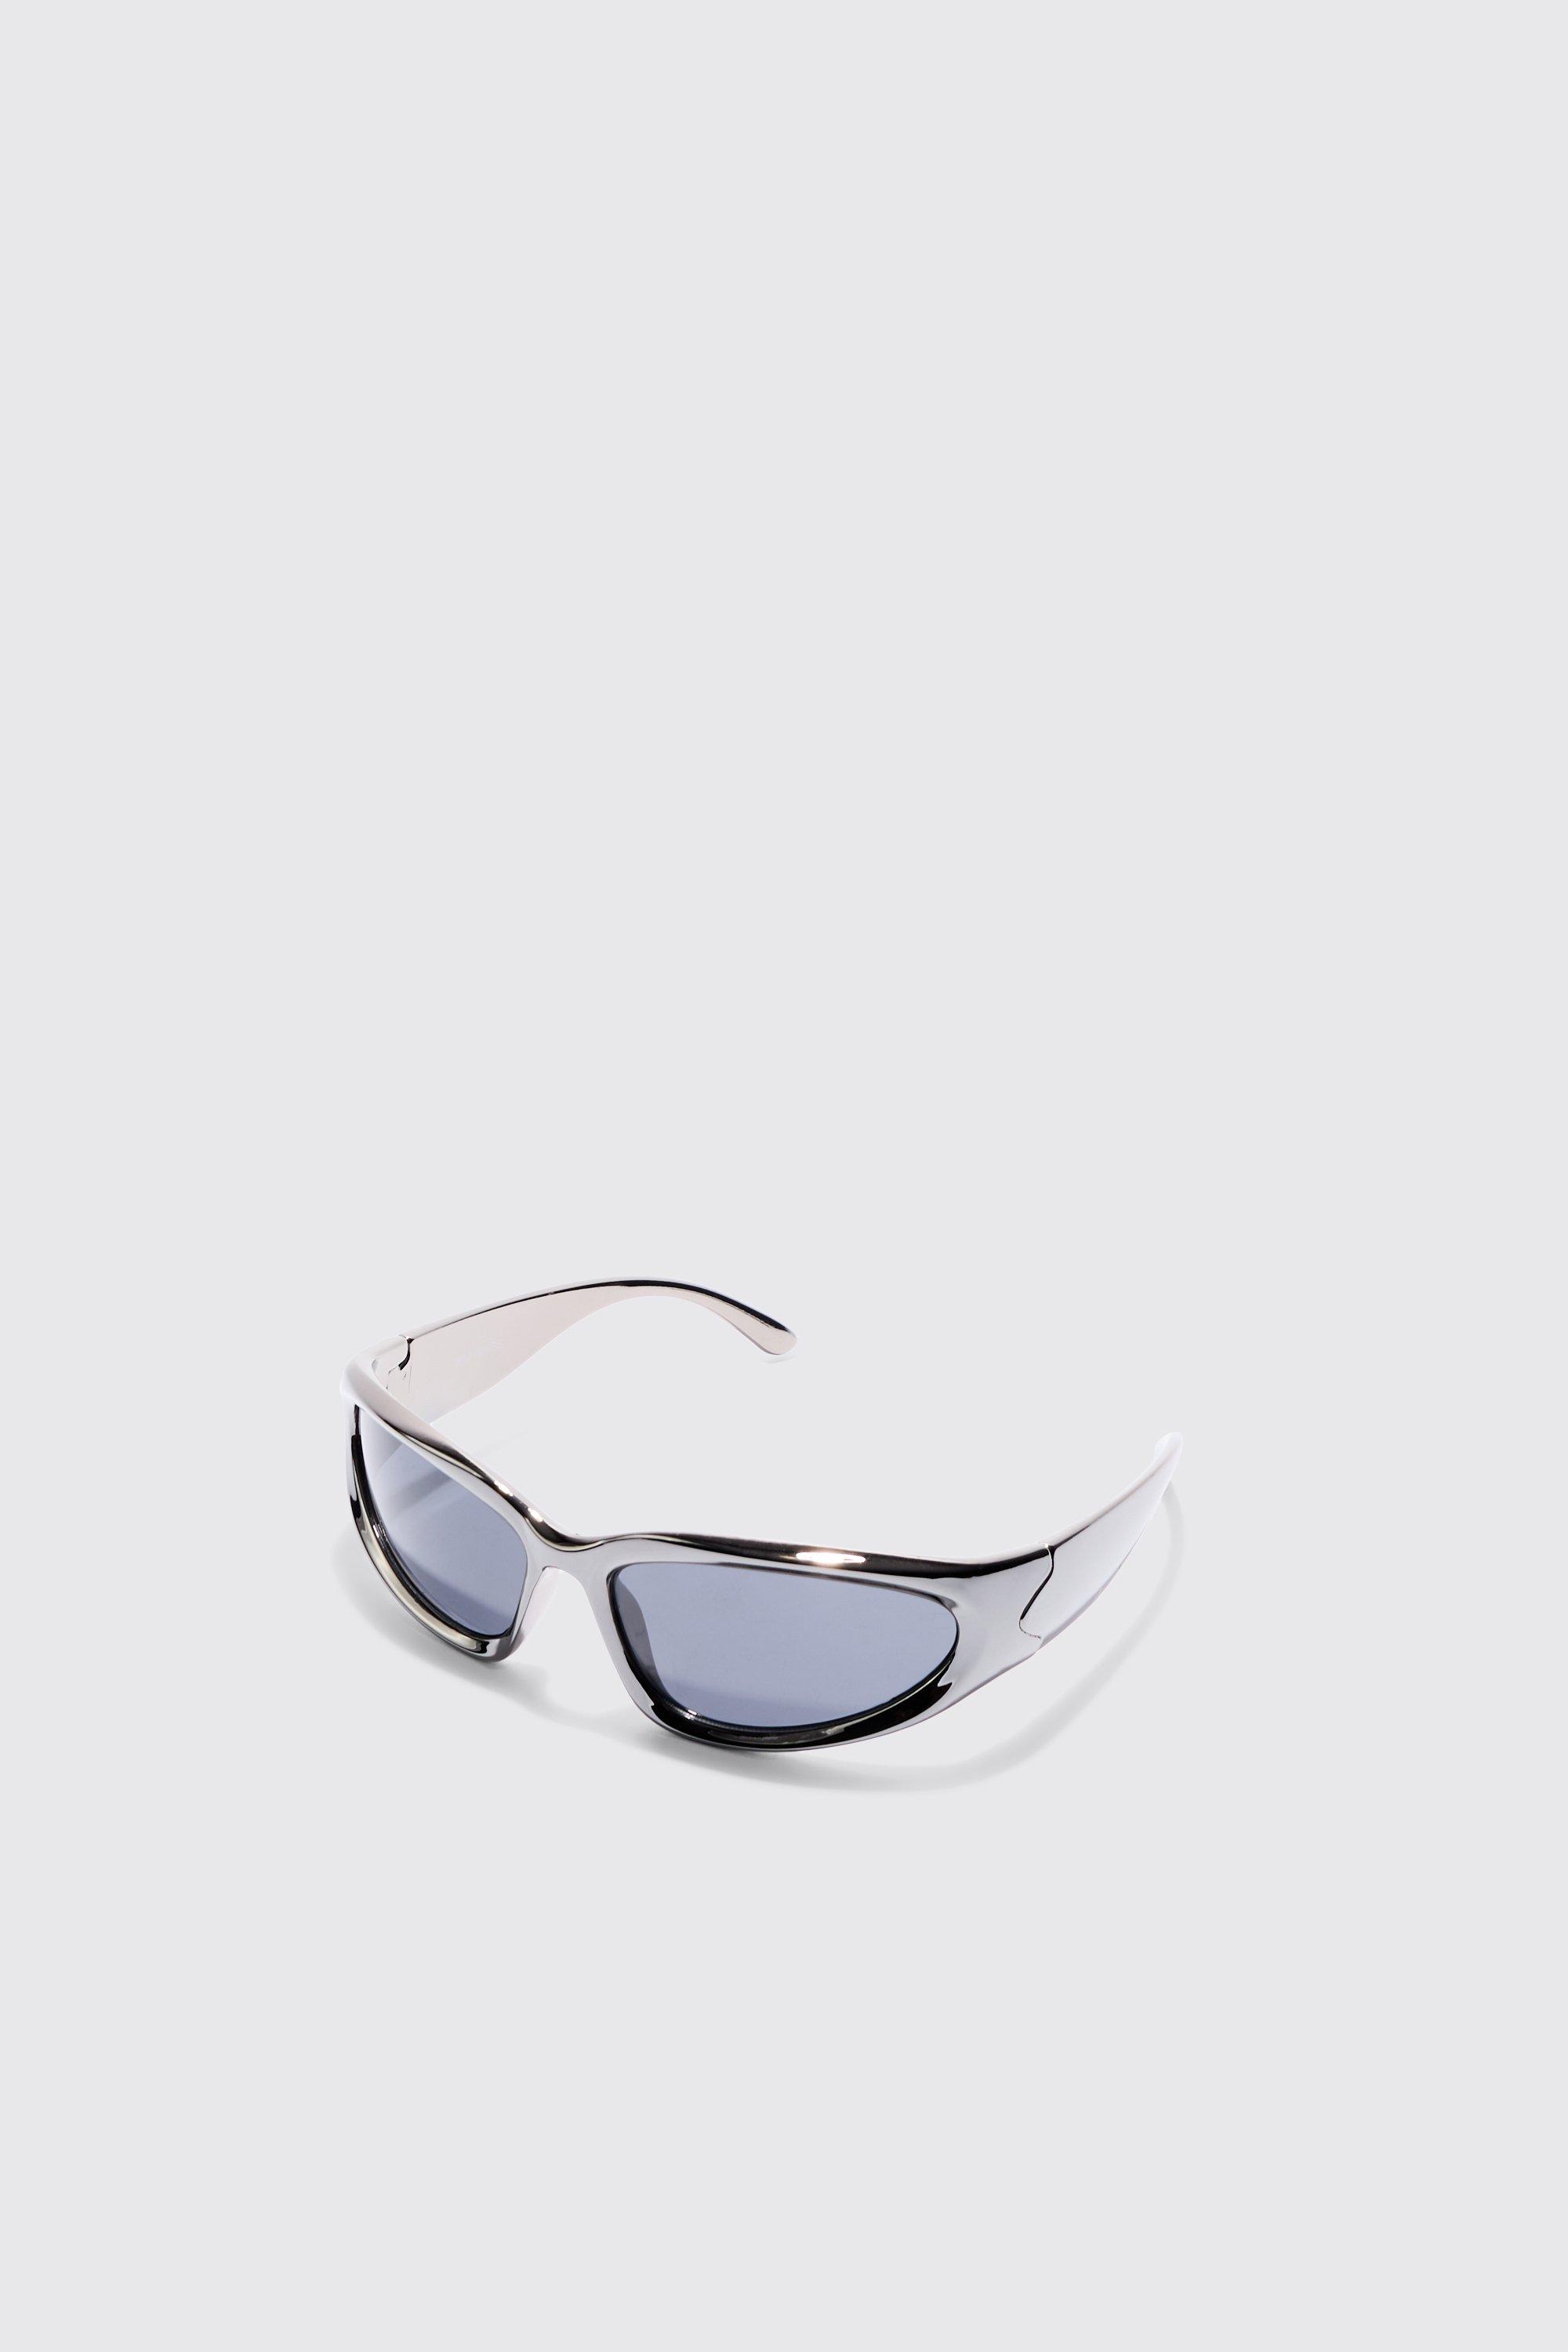 Image of Retro Sunglasses In Grey, Grigio